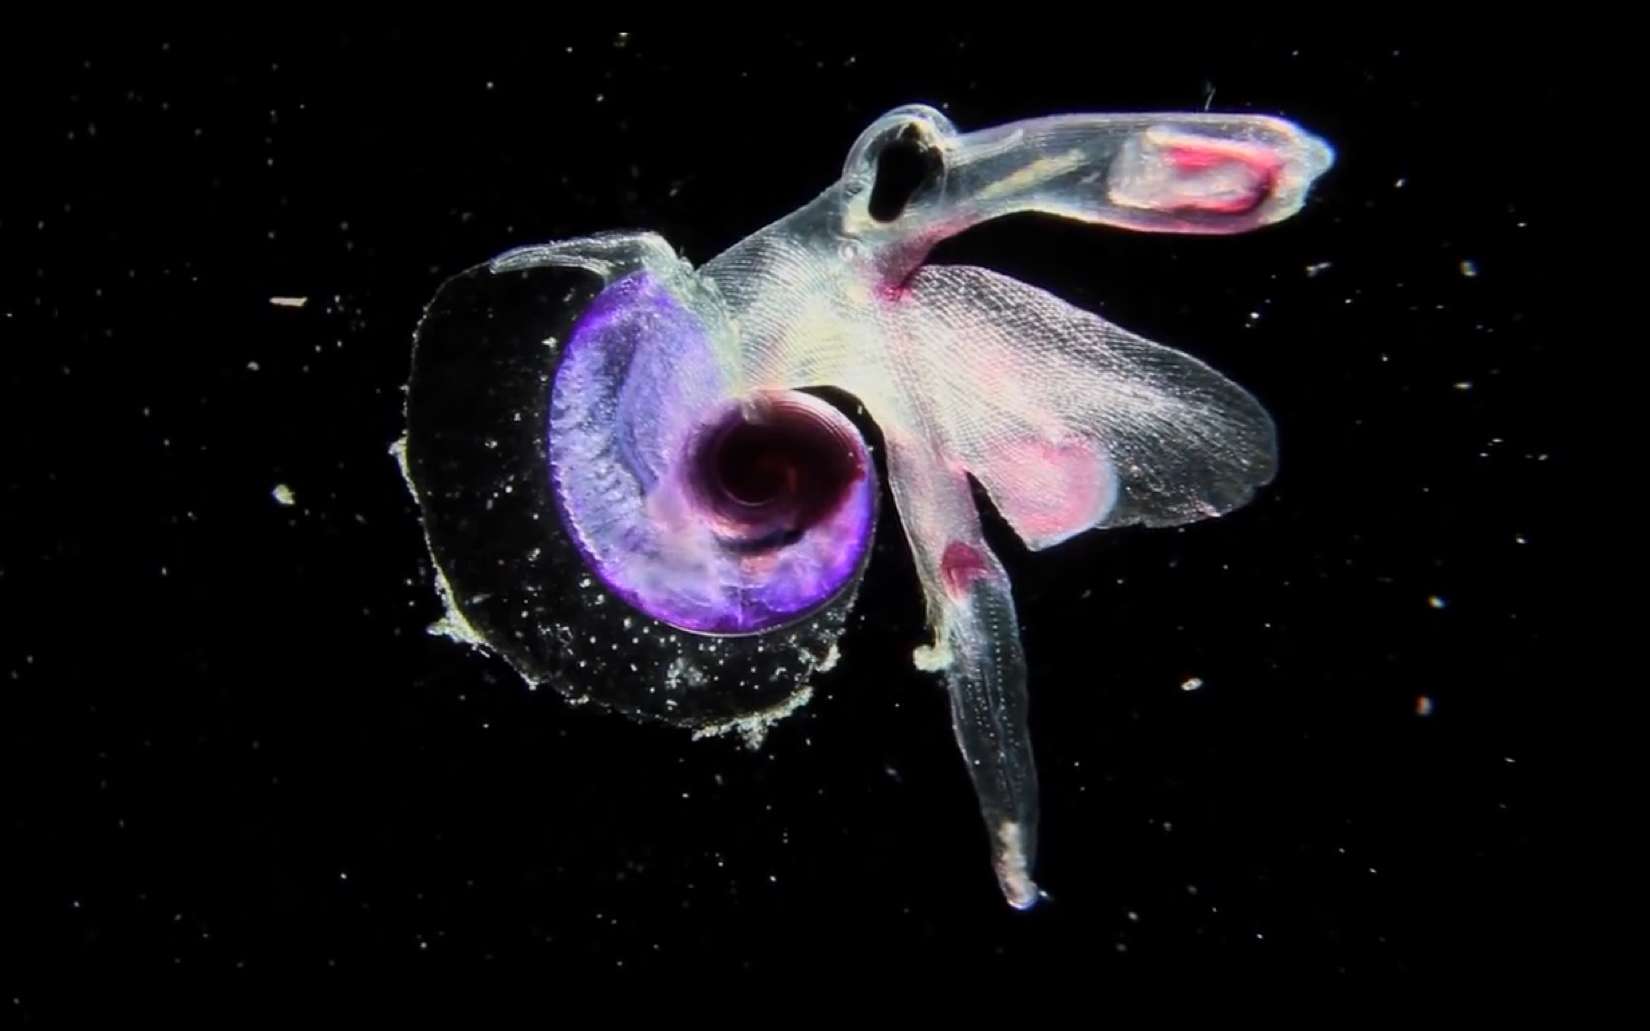 Le mollusque hétéropode Atlantidé. Ce macroplancton gélatineux n'est autre qu'un mollusque hétéropode : Atlantidé. Il est magnifiquement coloré – c'est un Oxygyrus sp. – et mesure quelques millimètres. Il ne possède qu’une nageoire lobée et une fine coquille transparente. Il a été collecté en mai 2010 dans l’océan Indien au cours de l’expédition Tara Oceans. © C. Sardet, CNRS, Tara Oceans http://www.planktonchronicles.org/fr